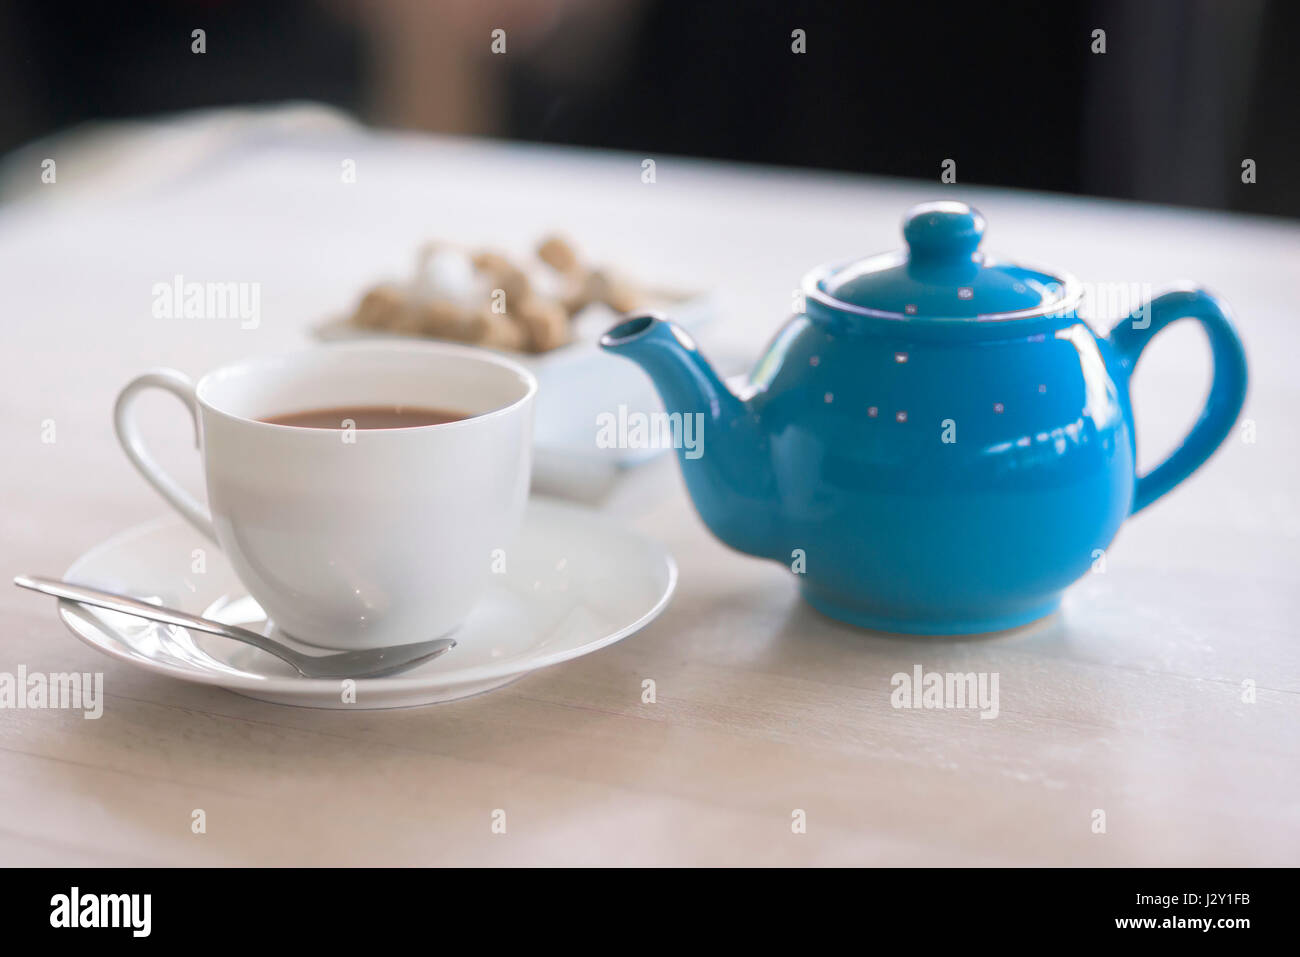 Tasse Tee Teekanne Tee Topf erfrischend Erfrischung Geschirr stimulierende Getränke britische Stockfoto